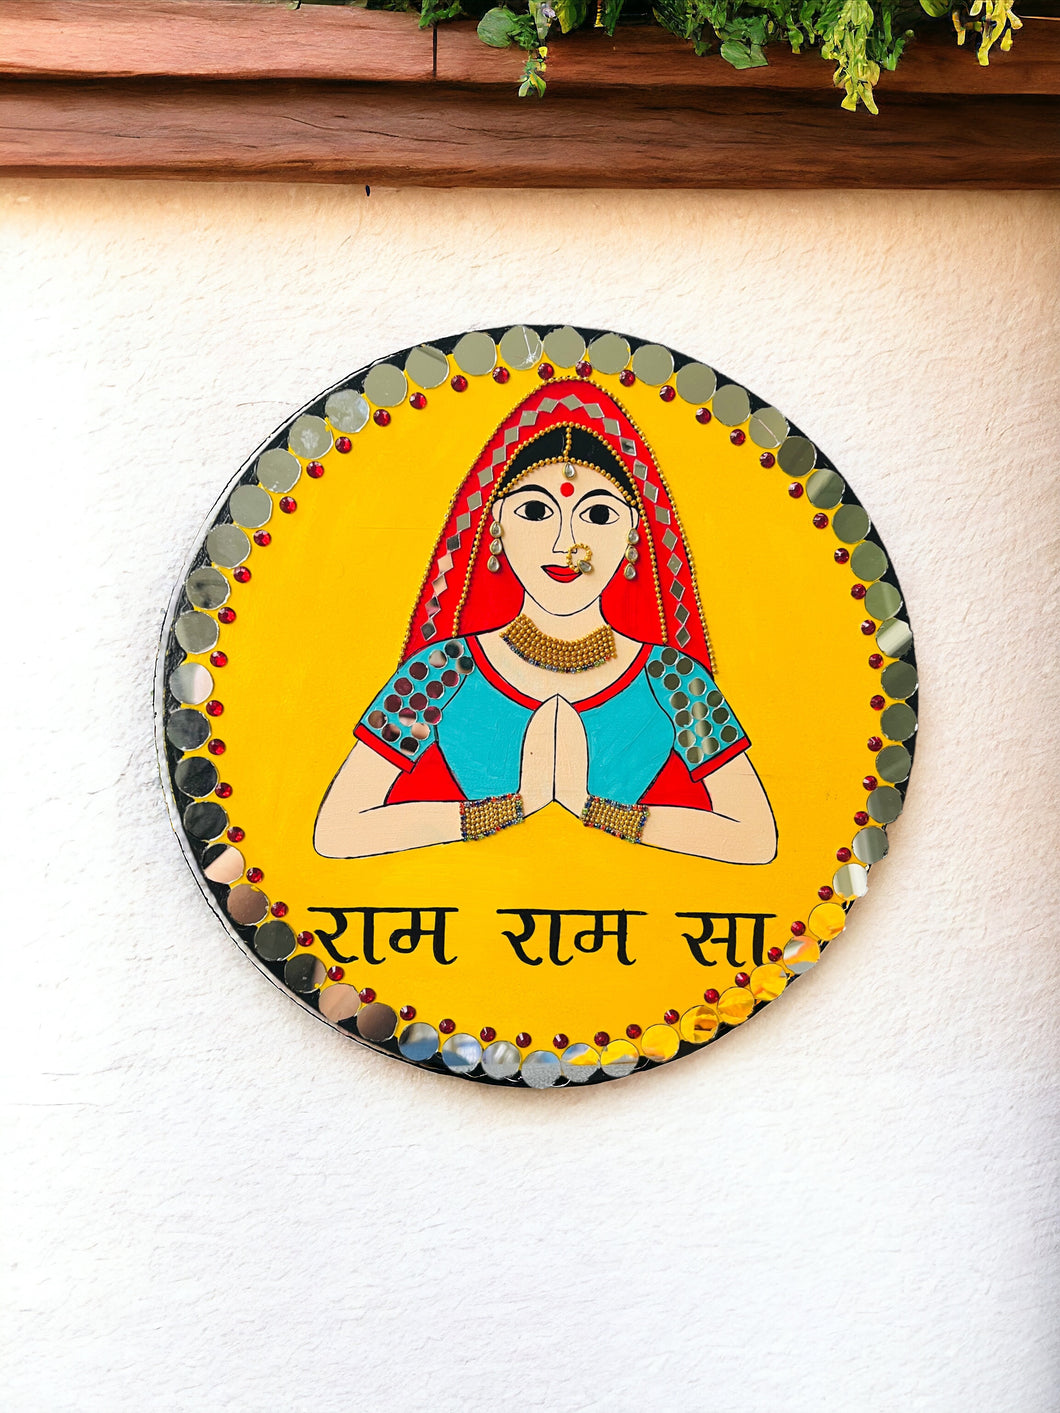 Handpainted RAM RAM SA ( Hindi) Yellow Mirror Women Wall Hanging